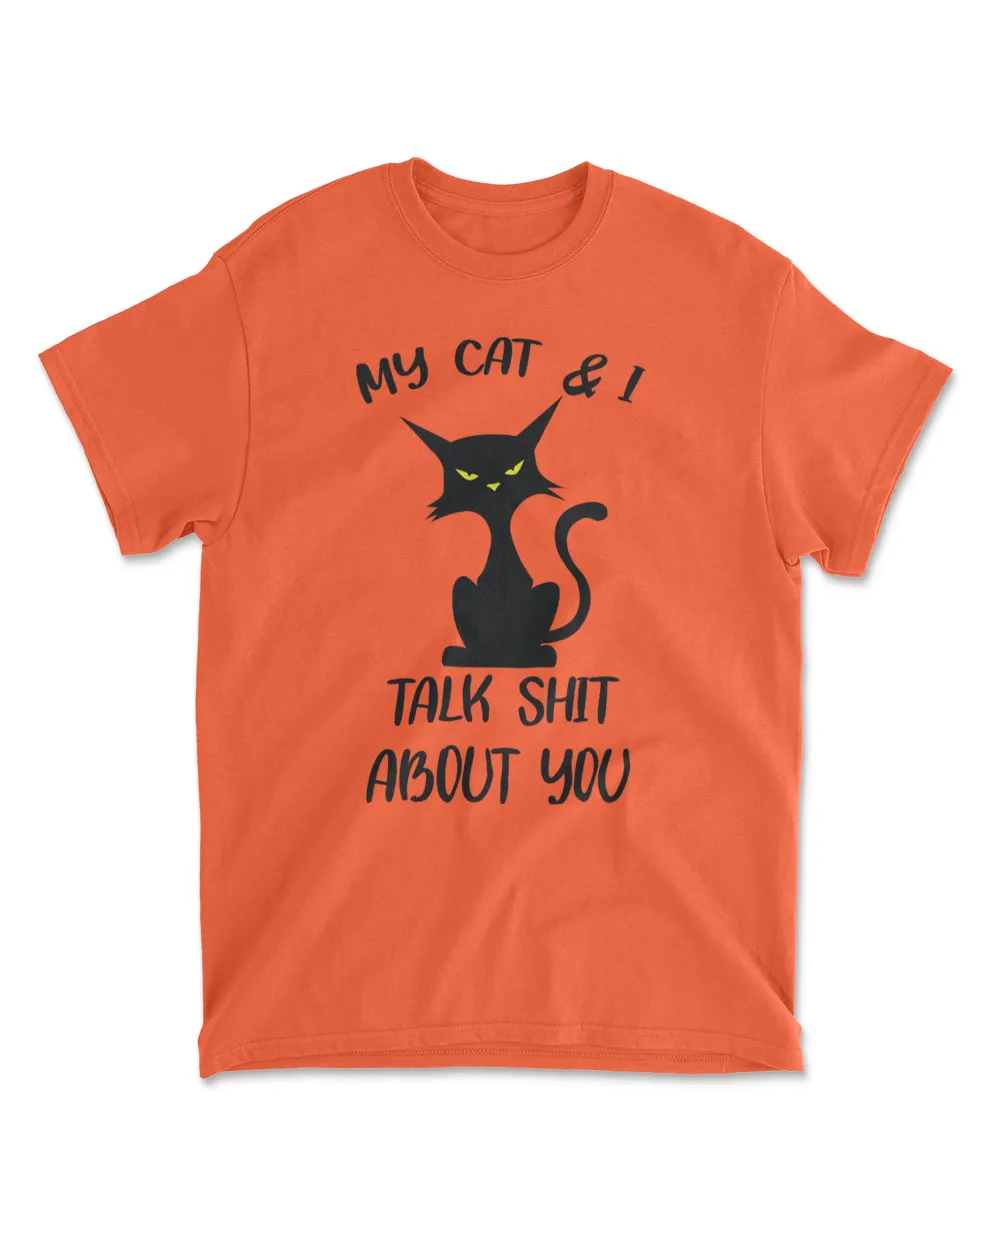 My Cat And I Talk Cat T-Shirt